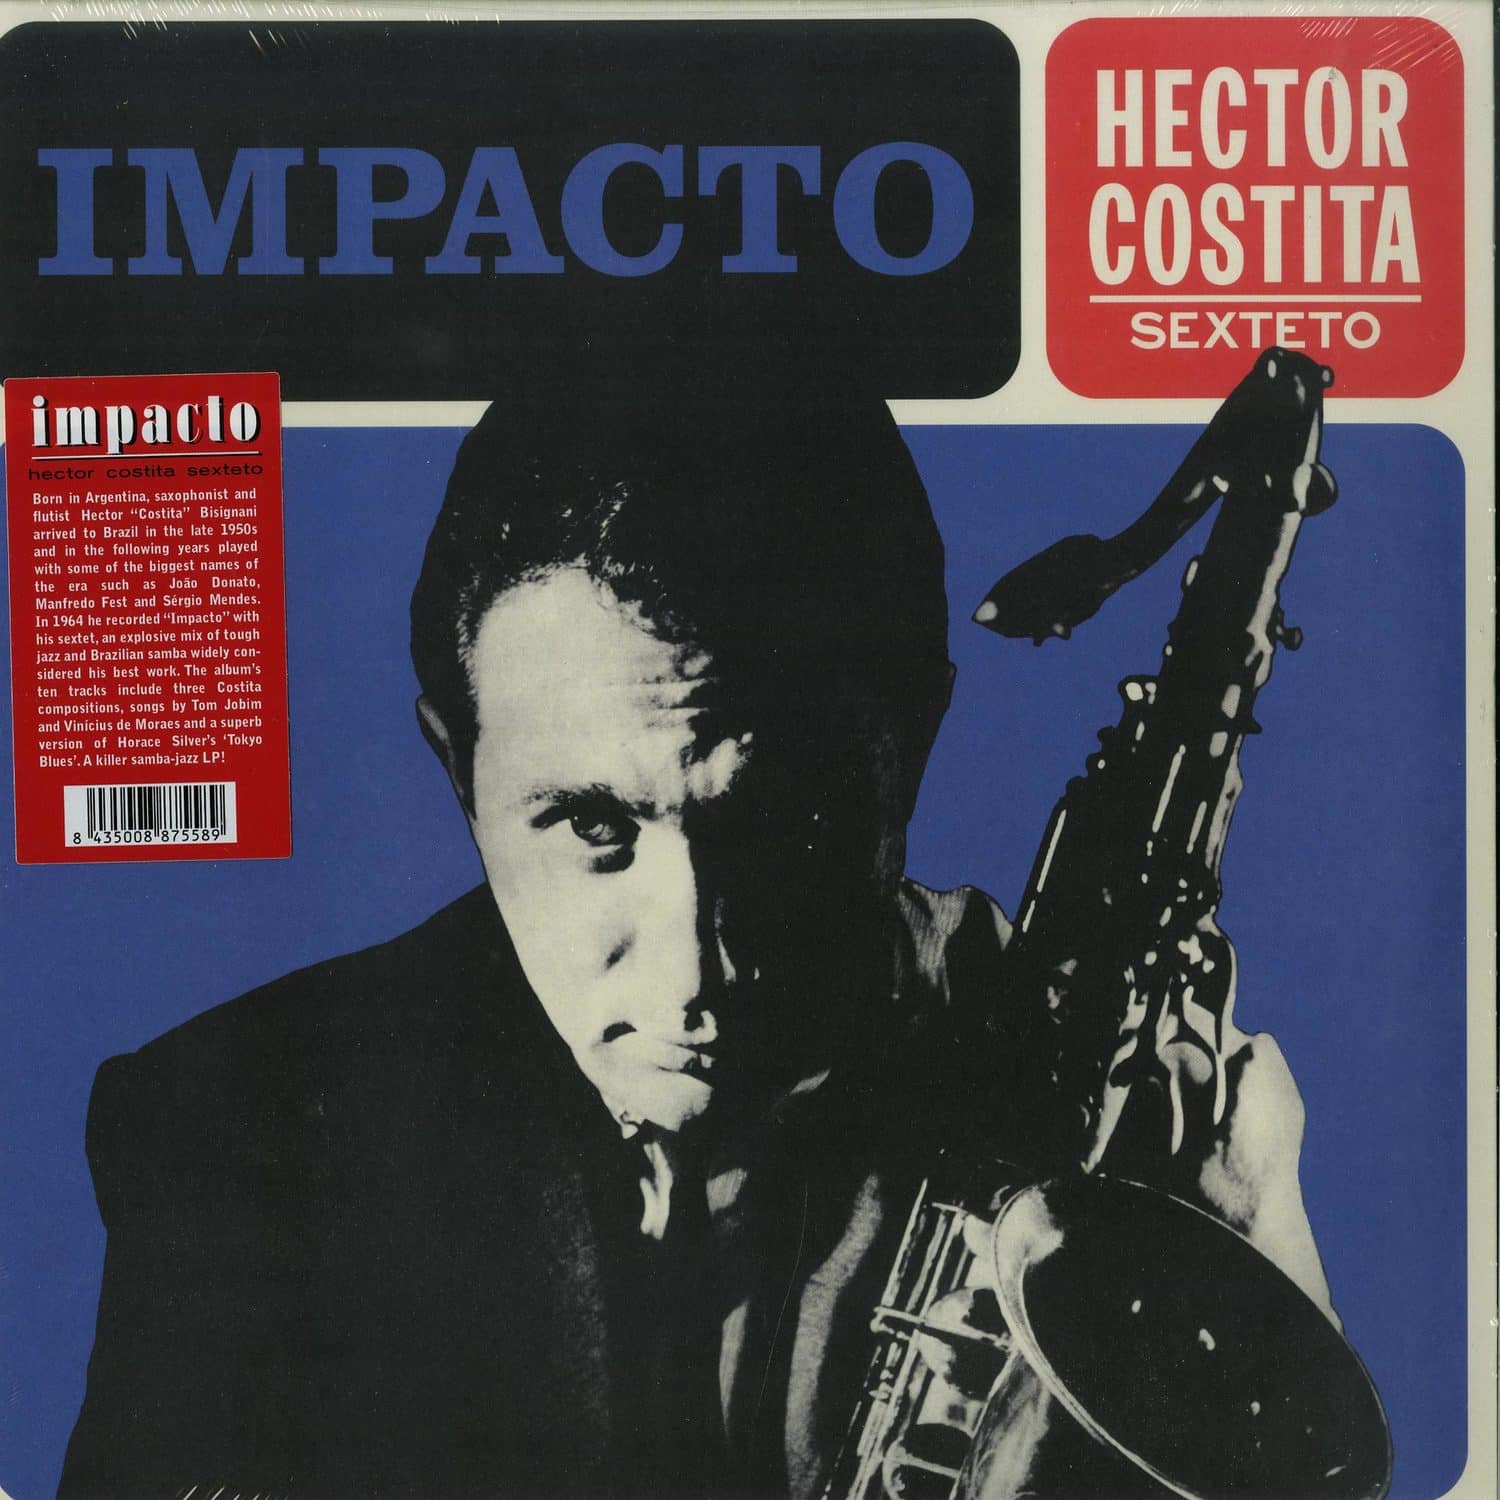 Hector Costita Sexteto - IMPACTO 